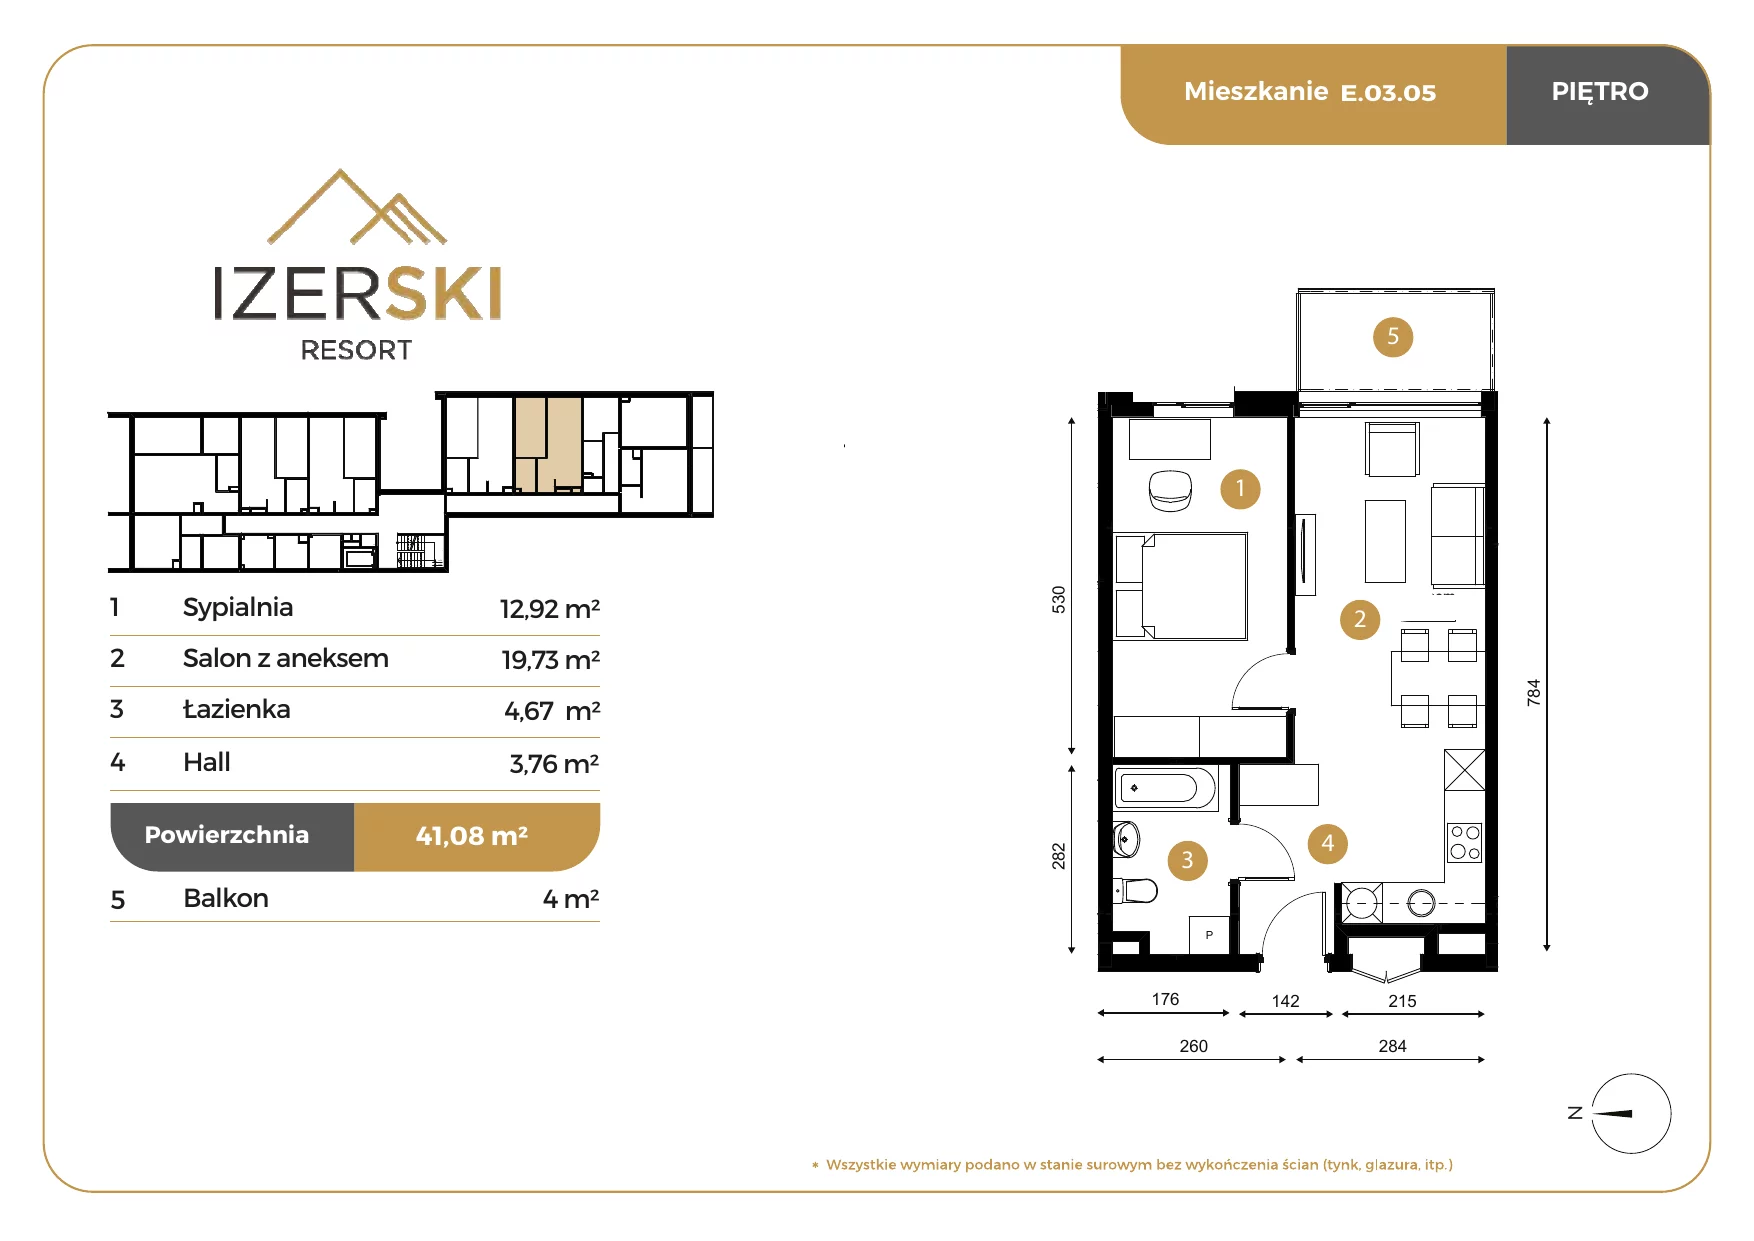 Apartament inwestycyjny 41,08 m², piętro 3, oferta nr E.03.05, IzerSKI Resort, Świeradów-Zdrój, ul. Jana Kilińskiego 2